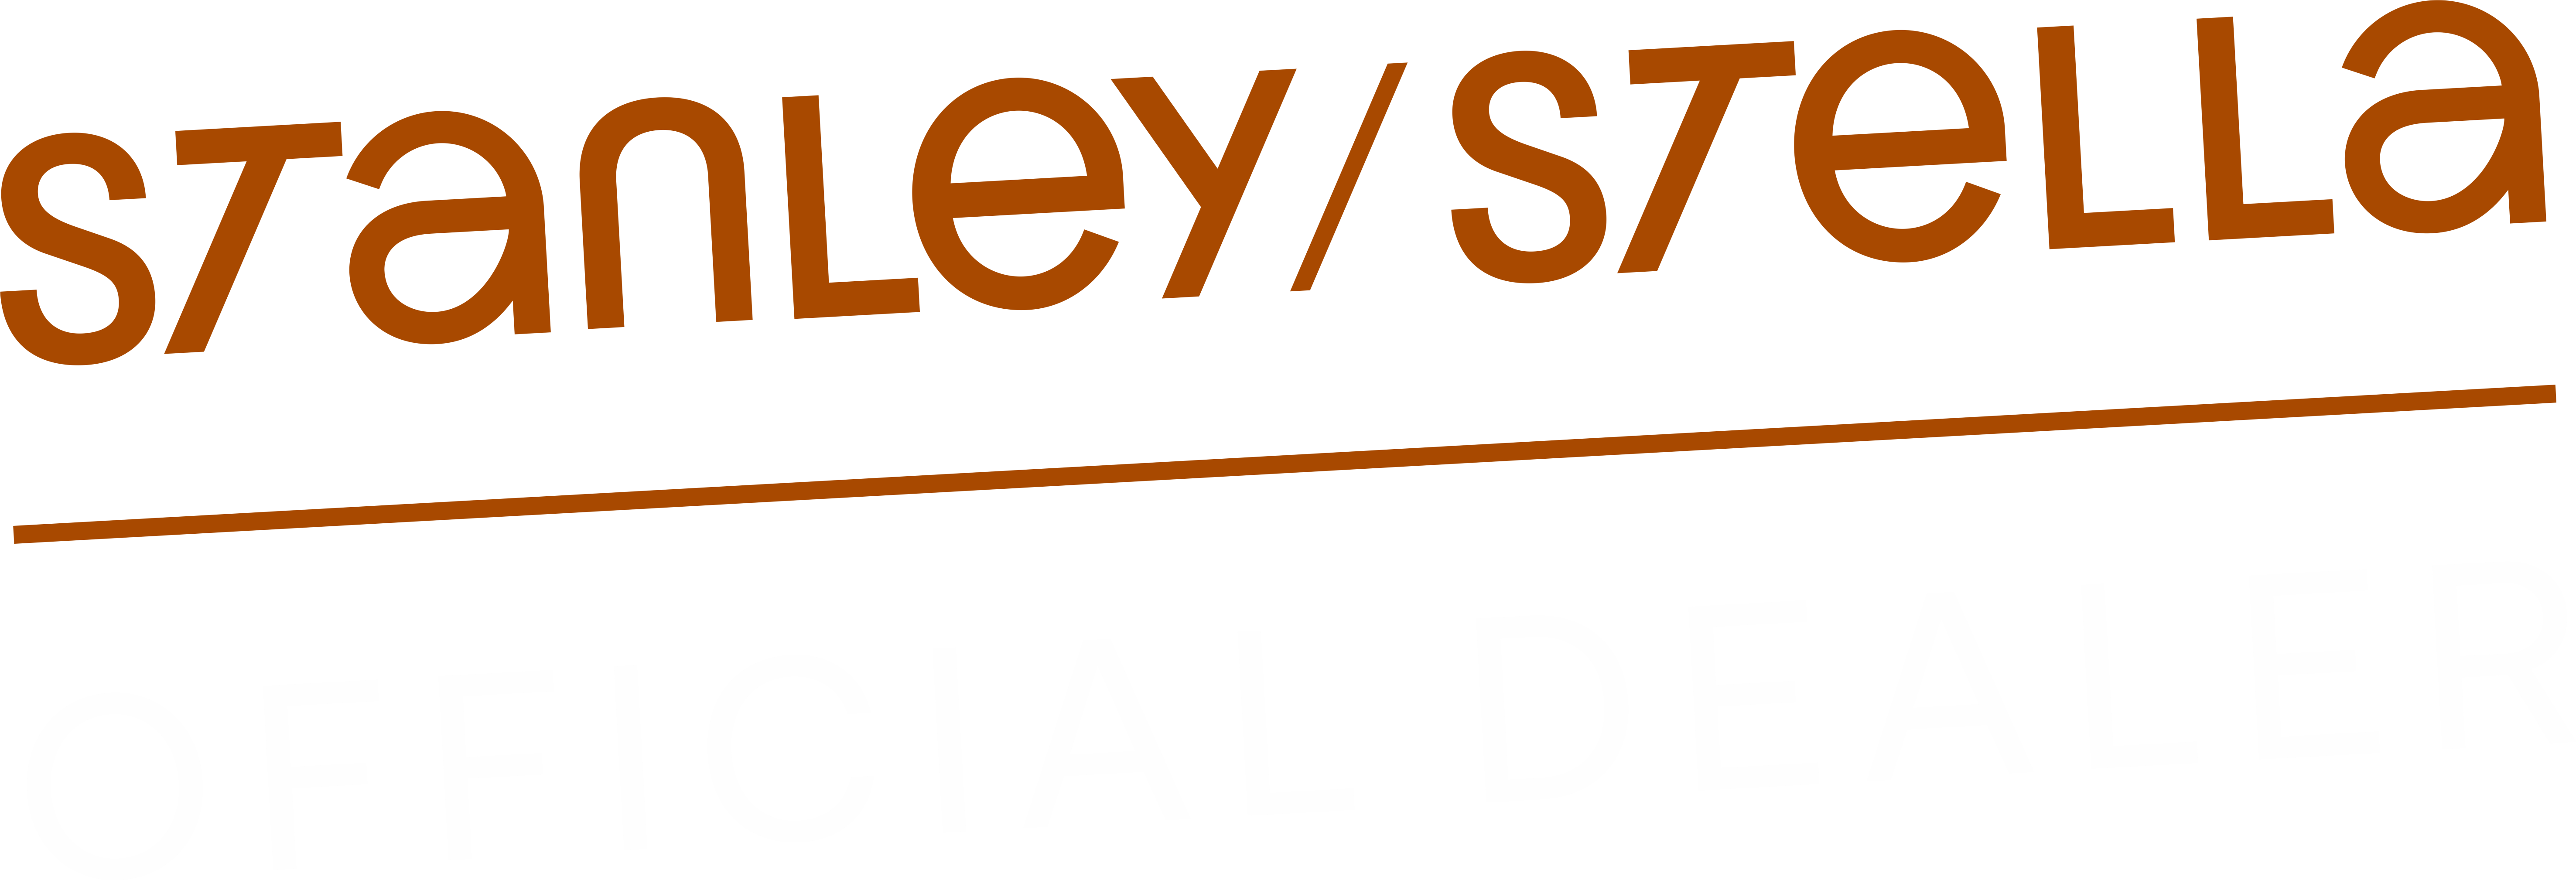 Stanley-Stella-official-dealer-logo-home-hover